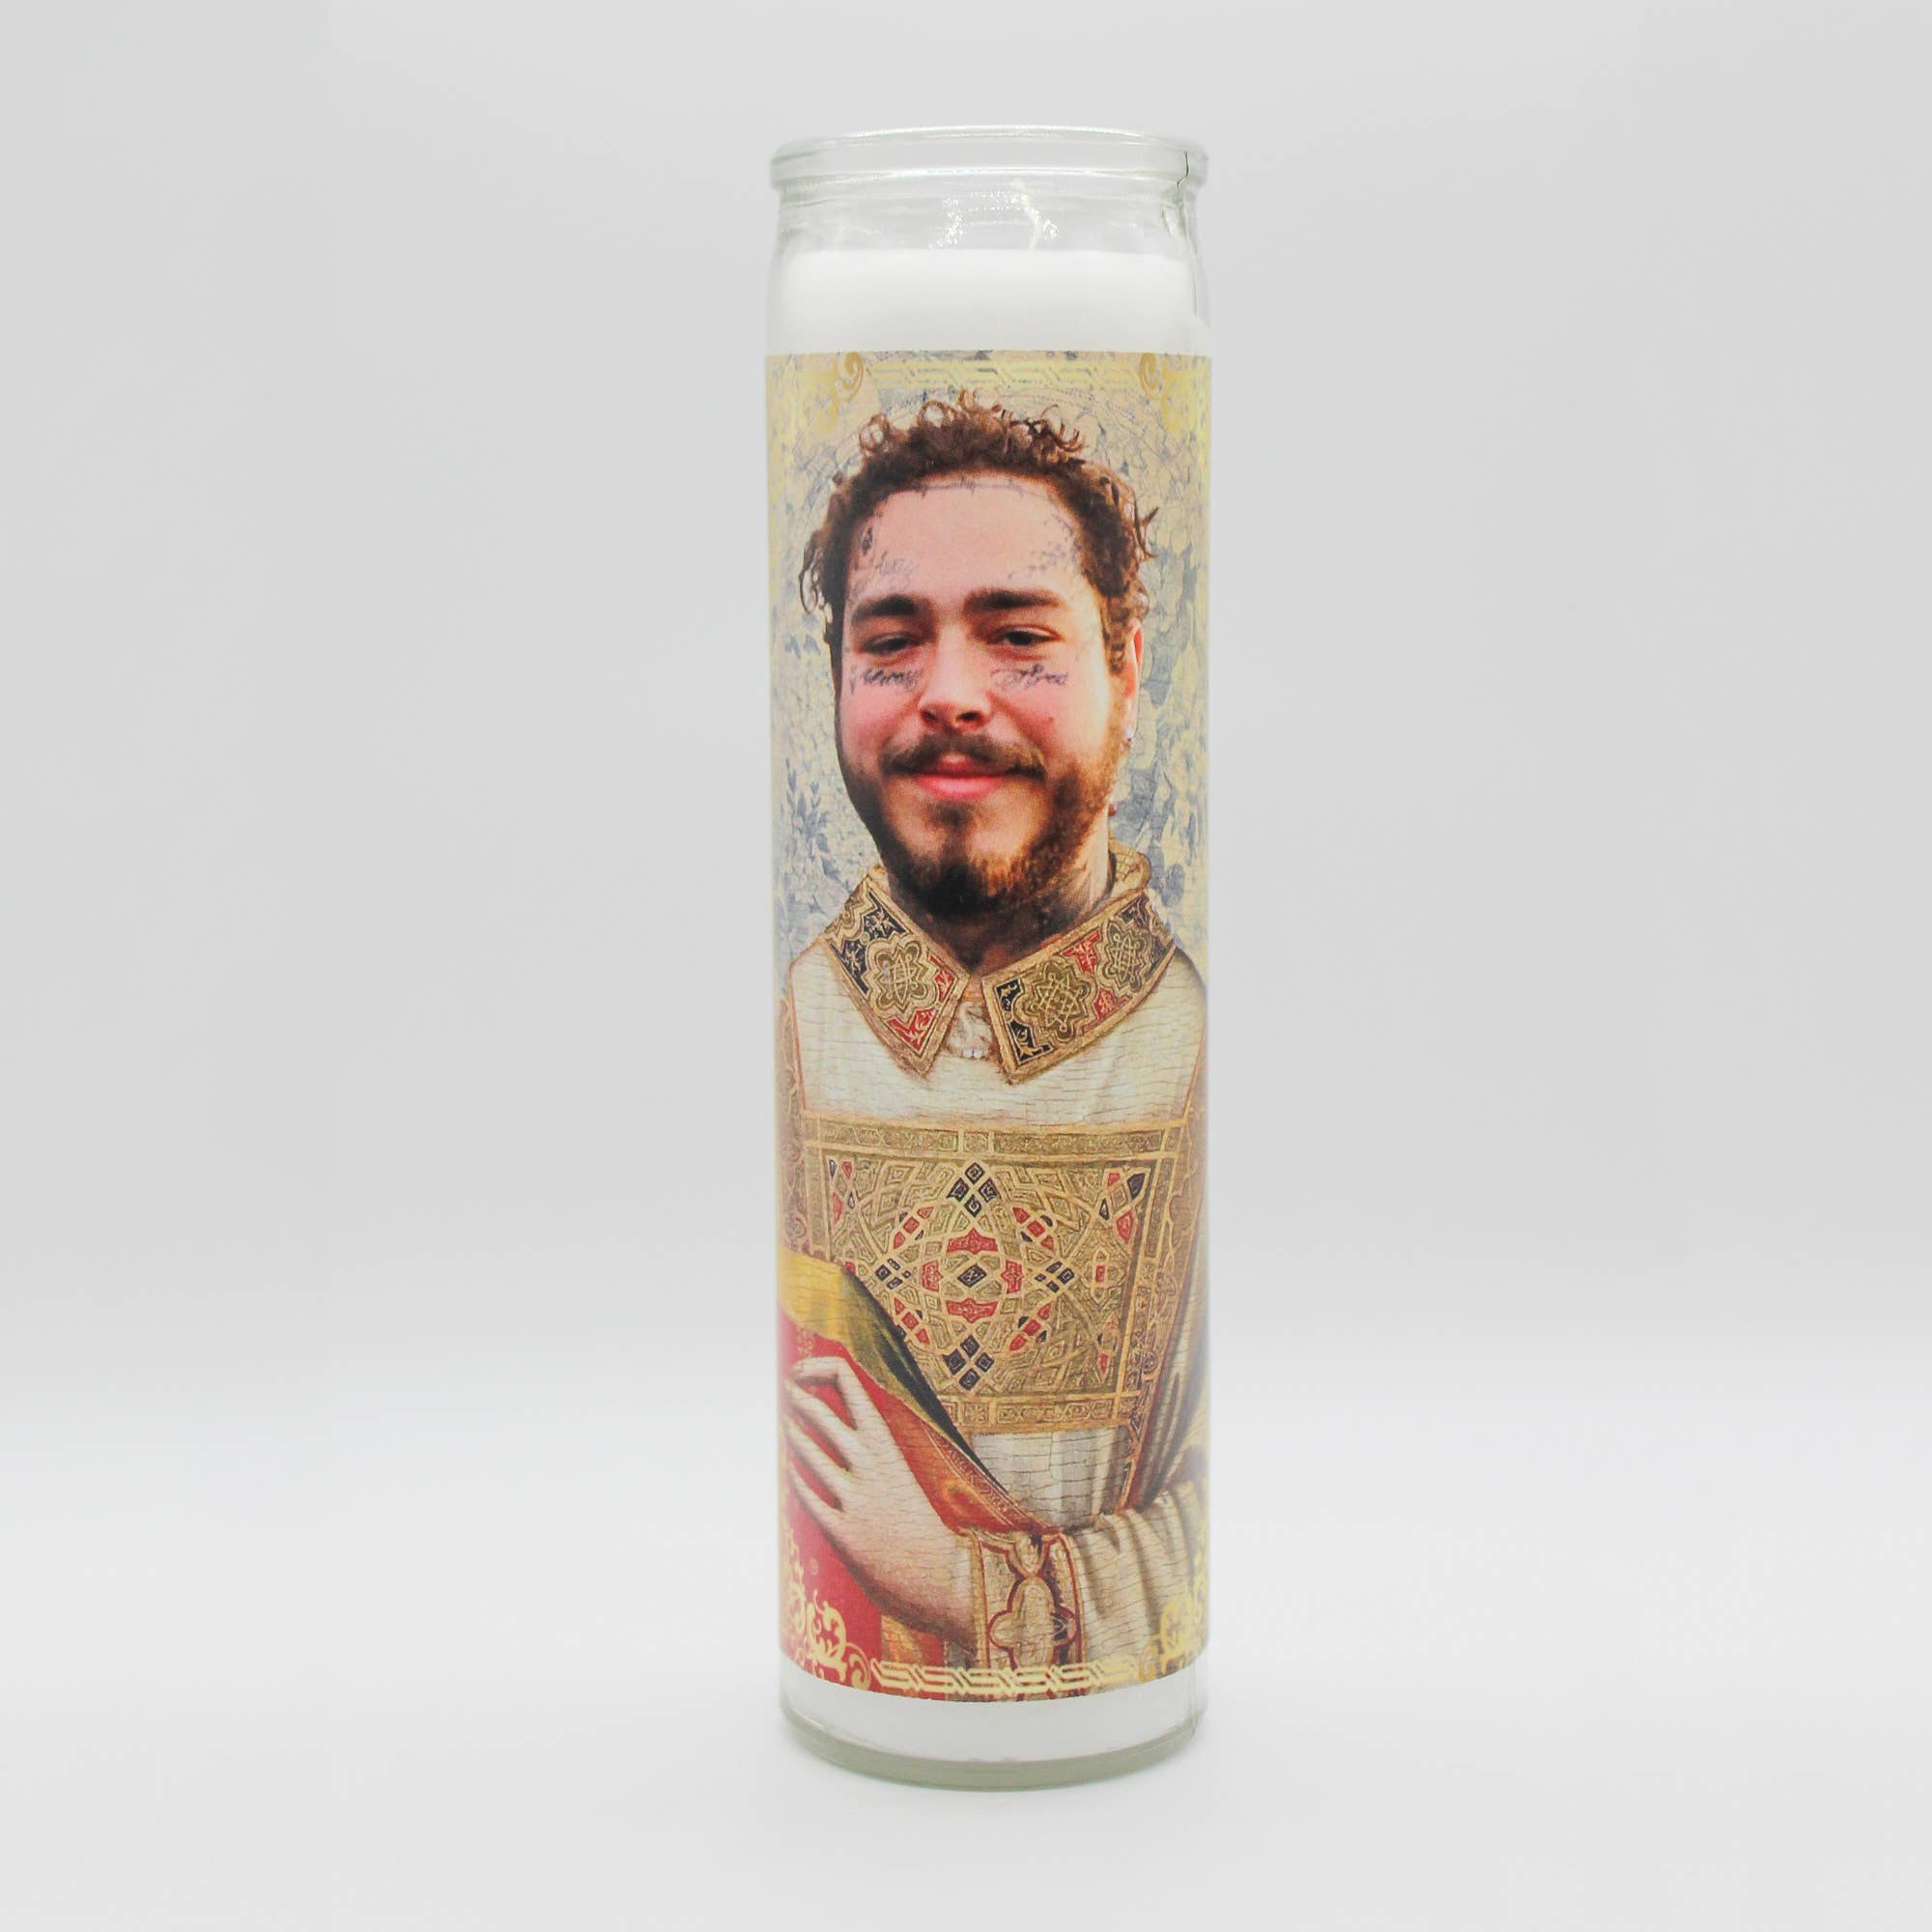 Post Malone Prayer Candle